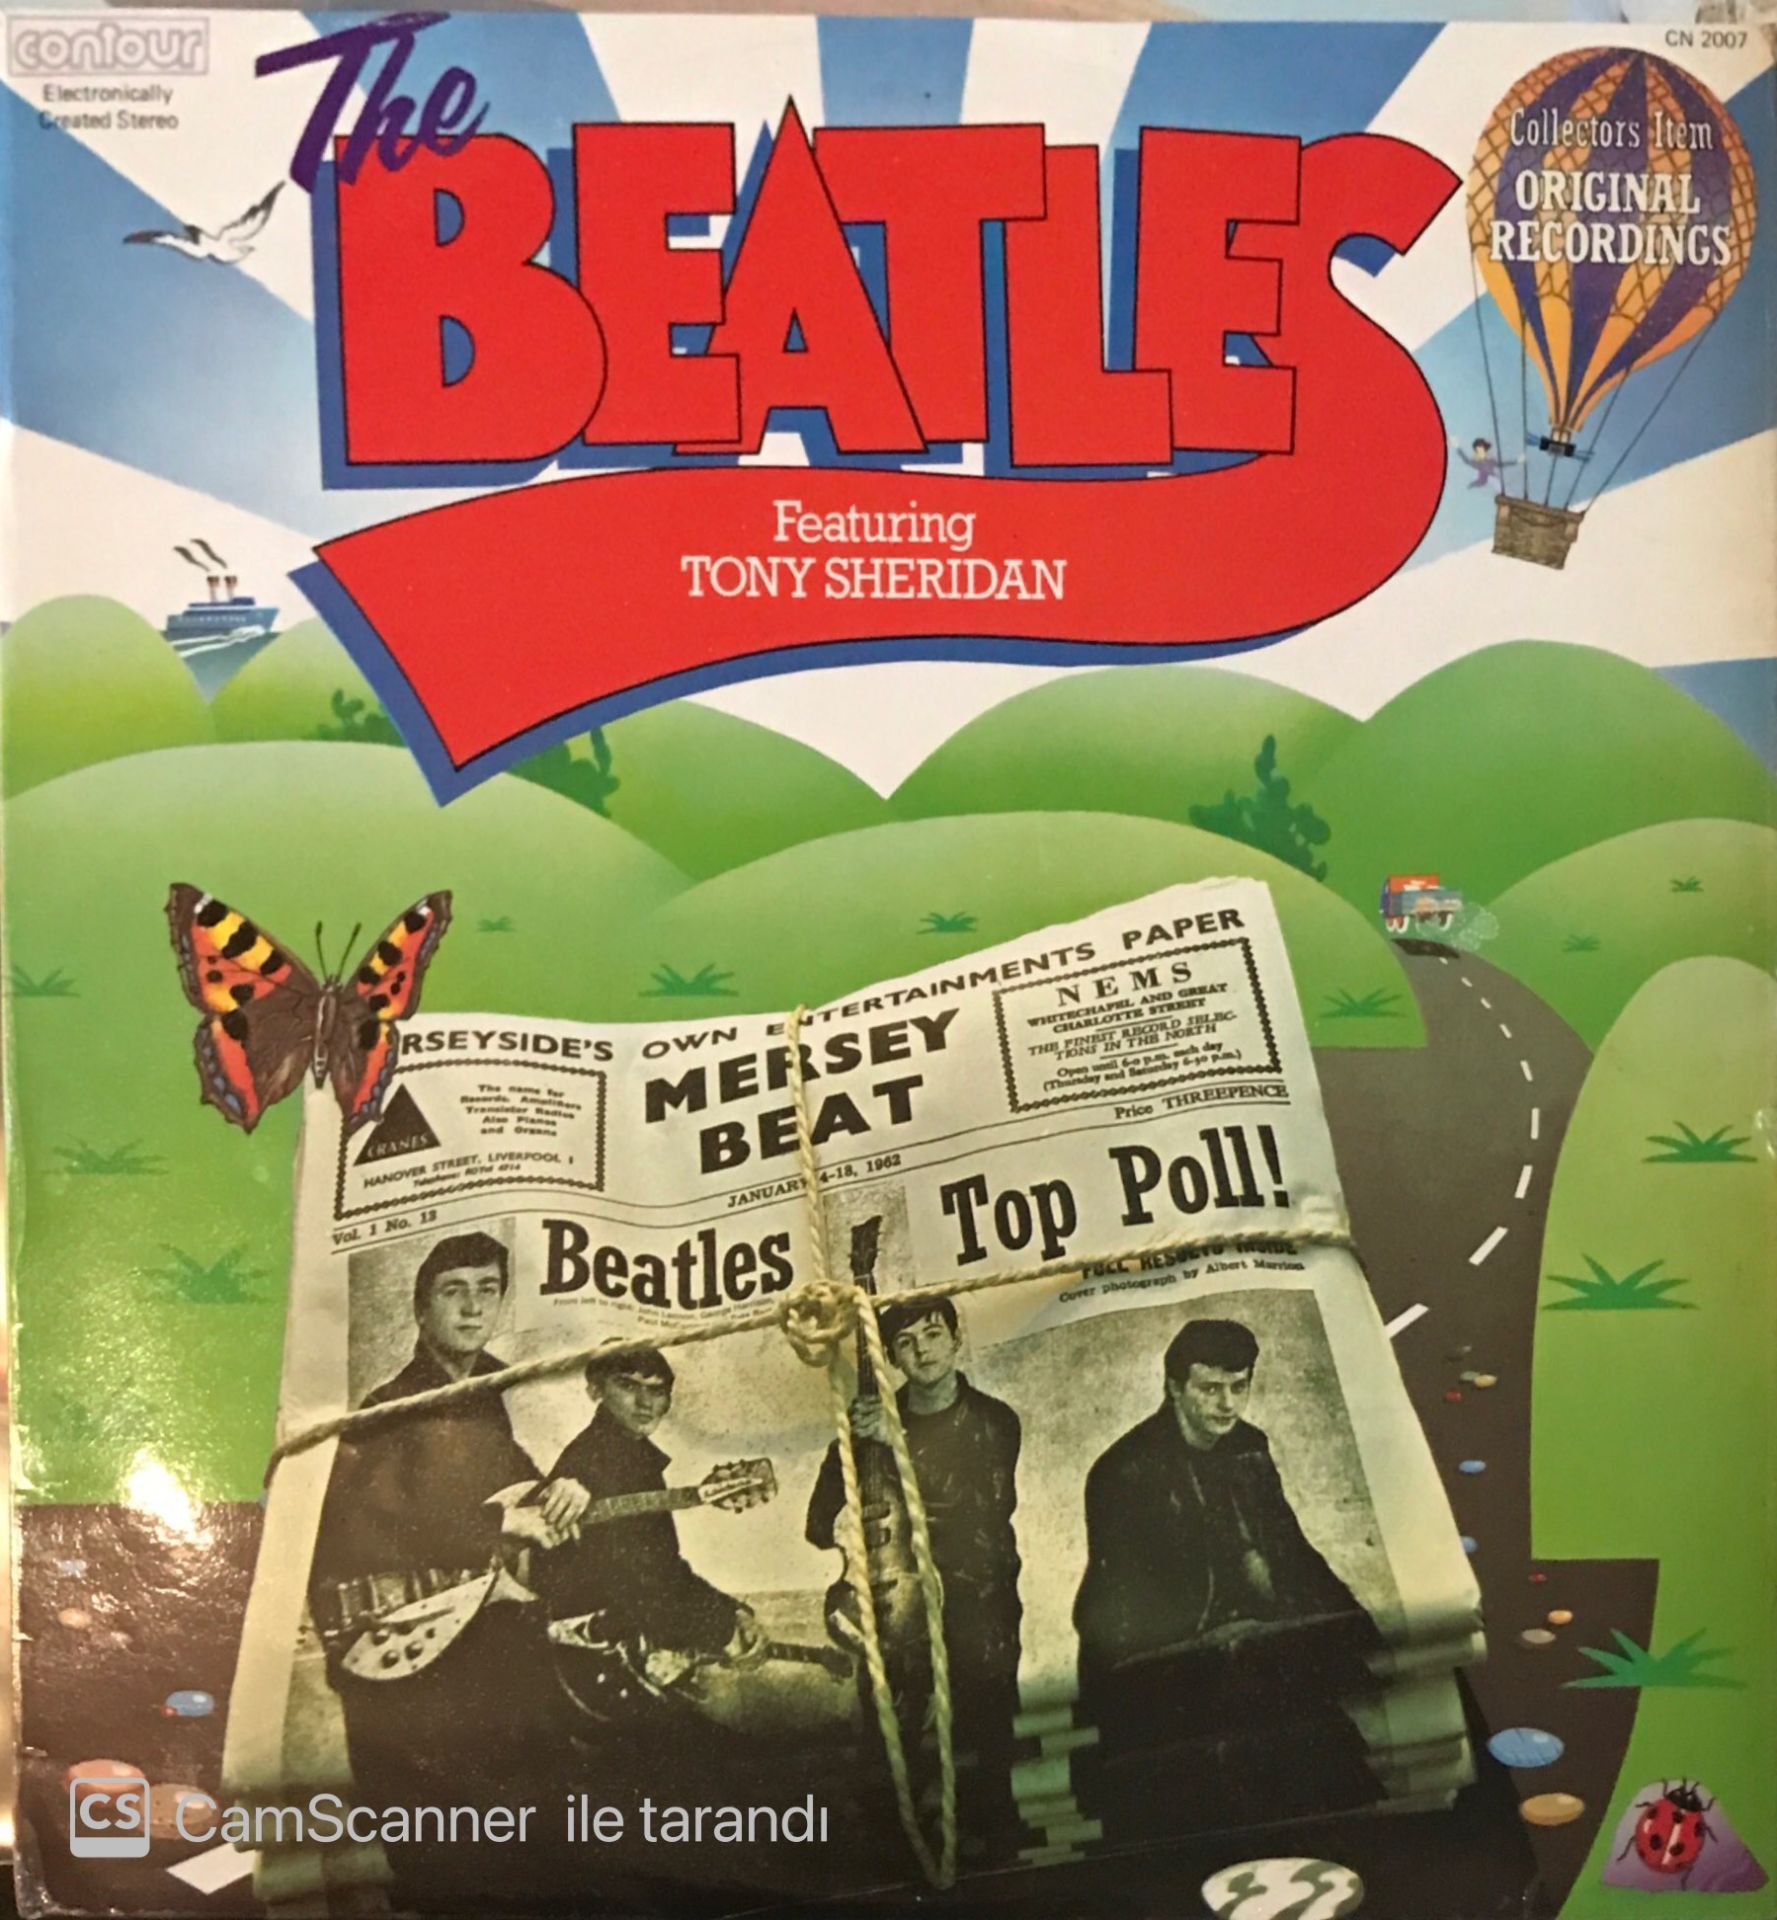 The Beatles Featuring Tony Sheridan LP